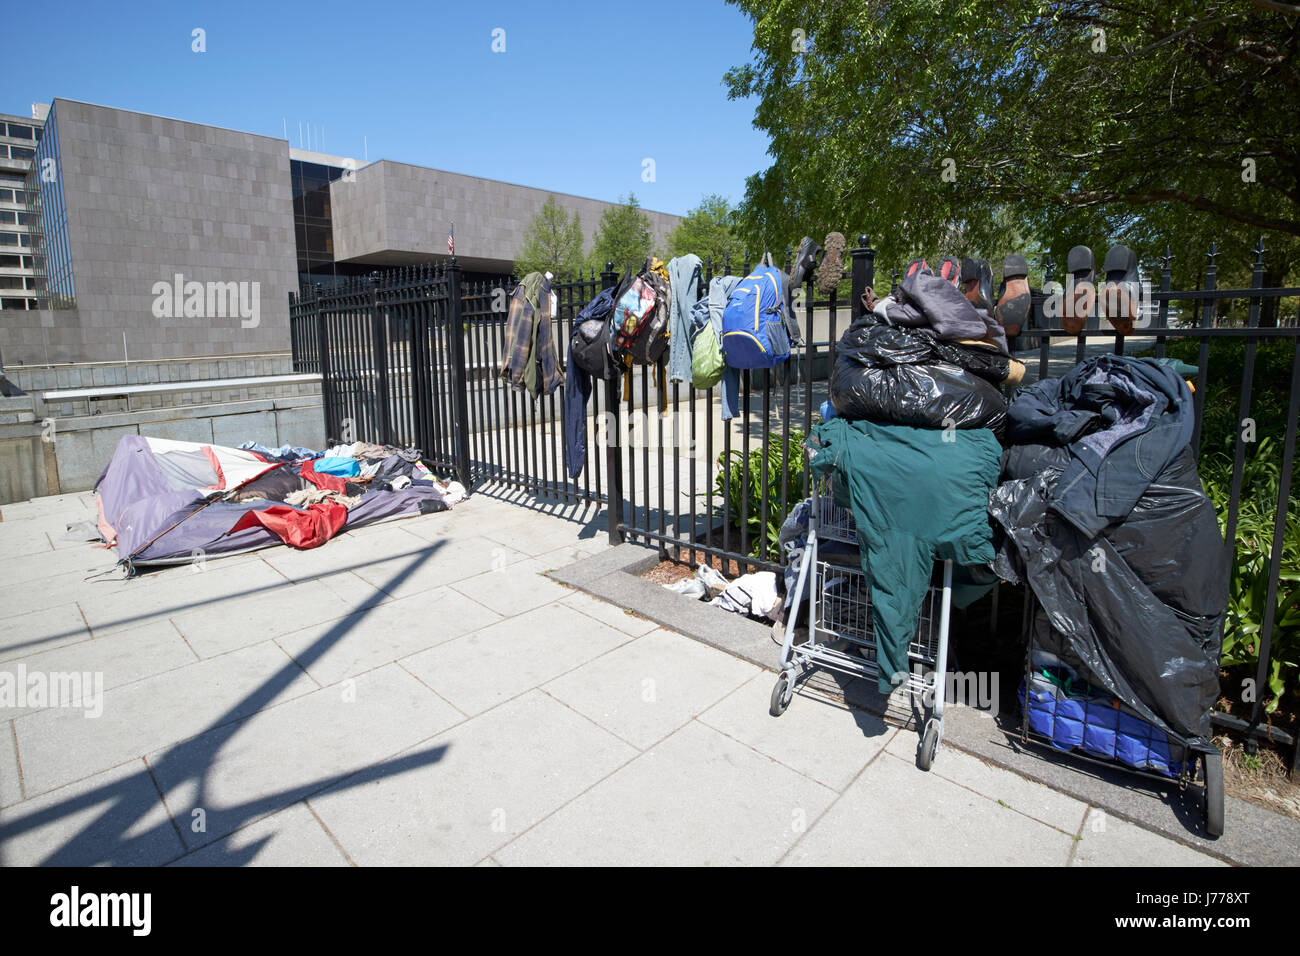 Trocknen von Kleidung und Gegenstände in der Sonne bei Obdachlosen rau schlafen Stadtviertel Justiz Square Washington DC USA Stockfoto